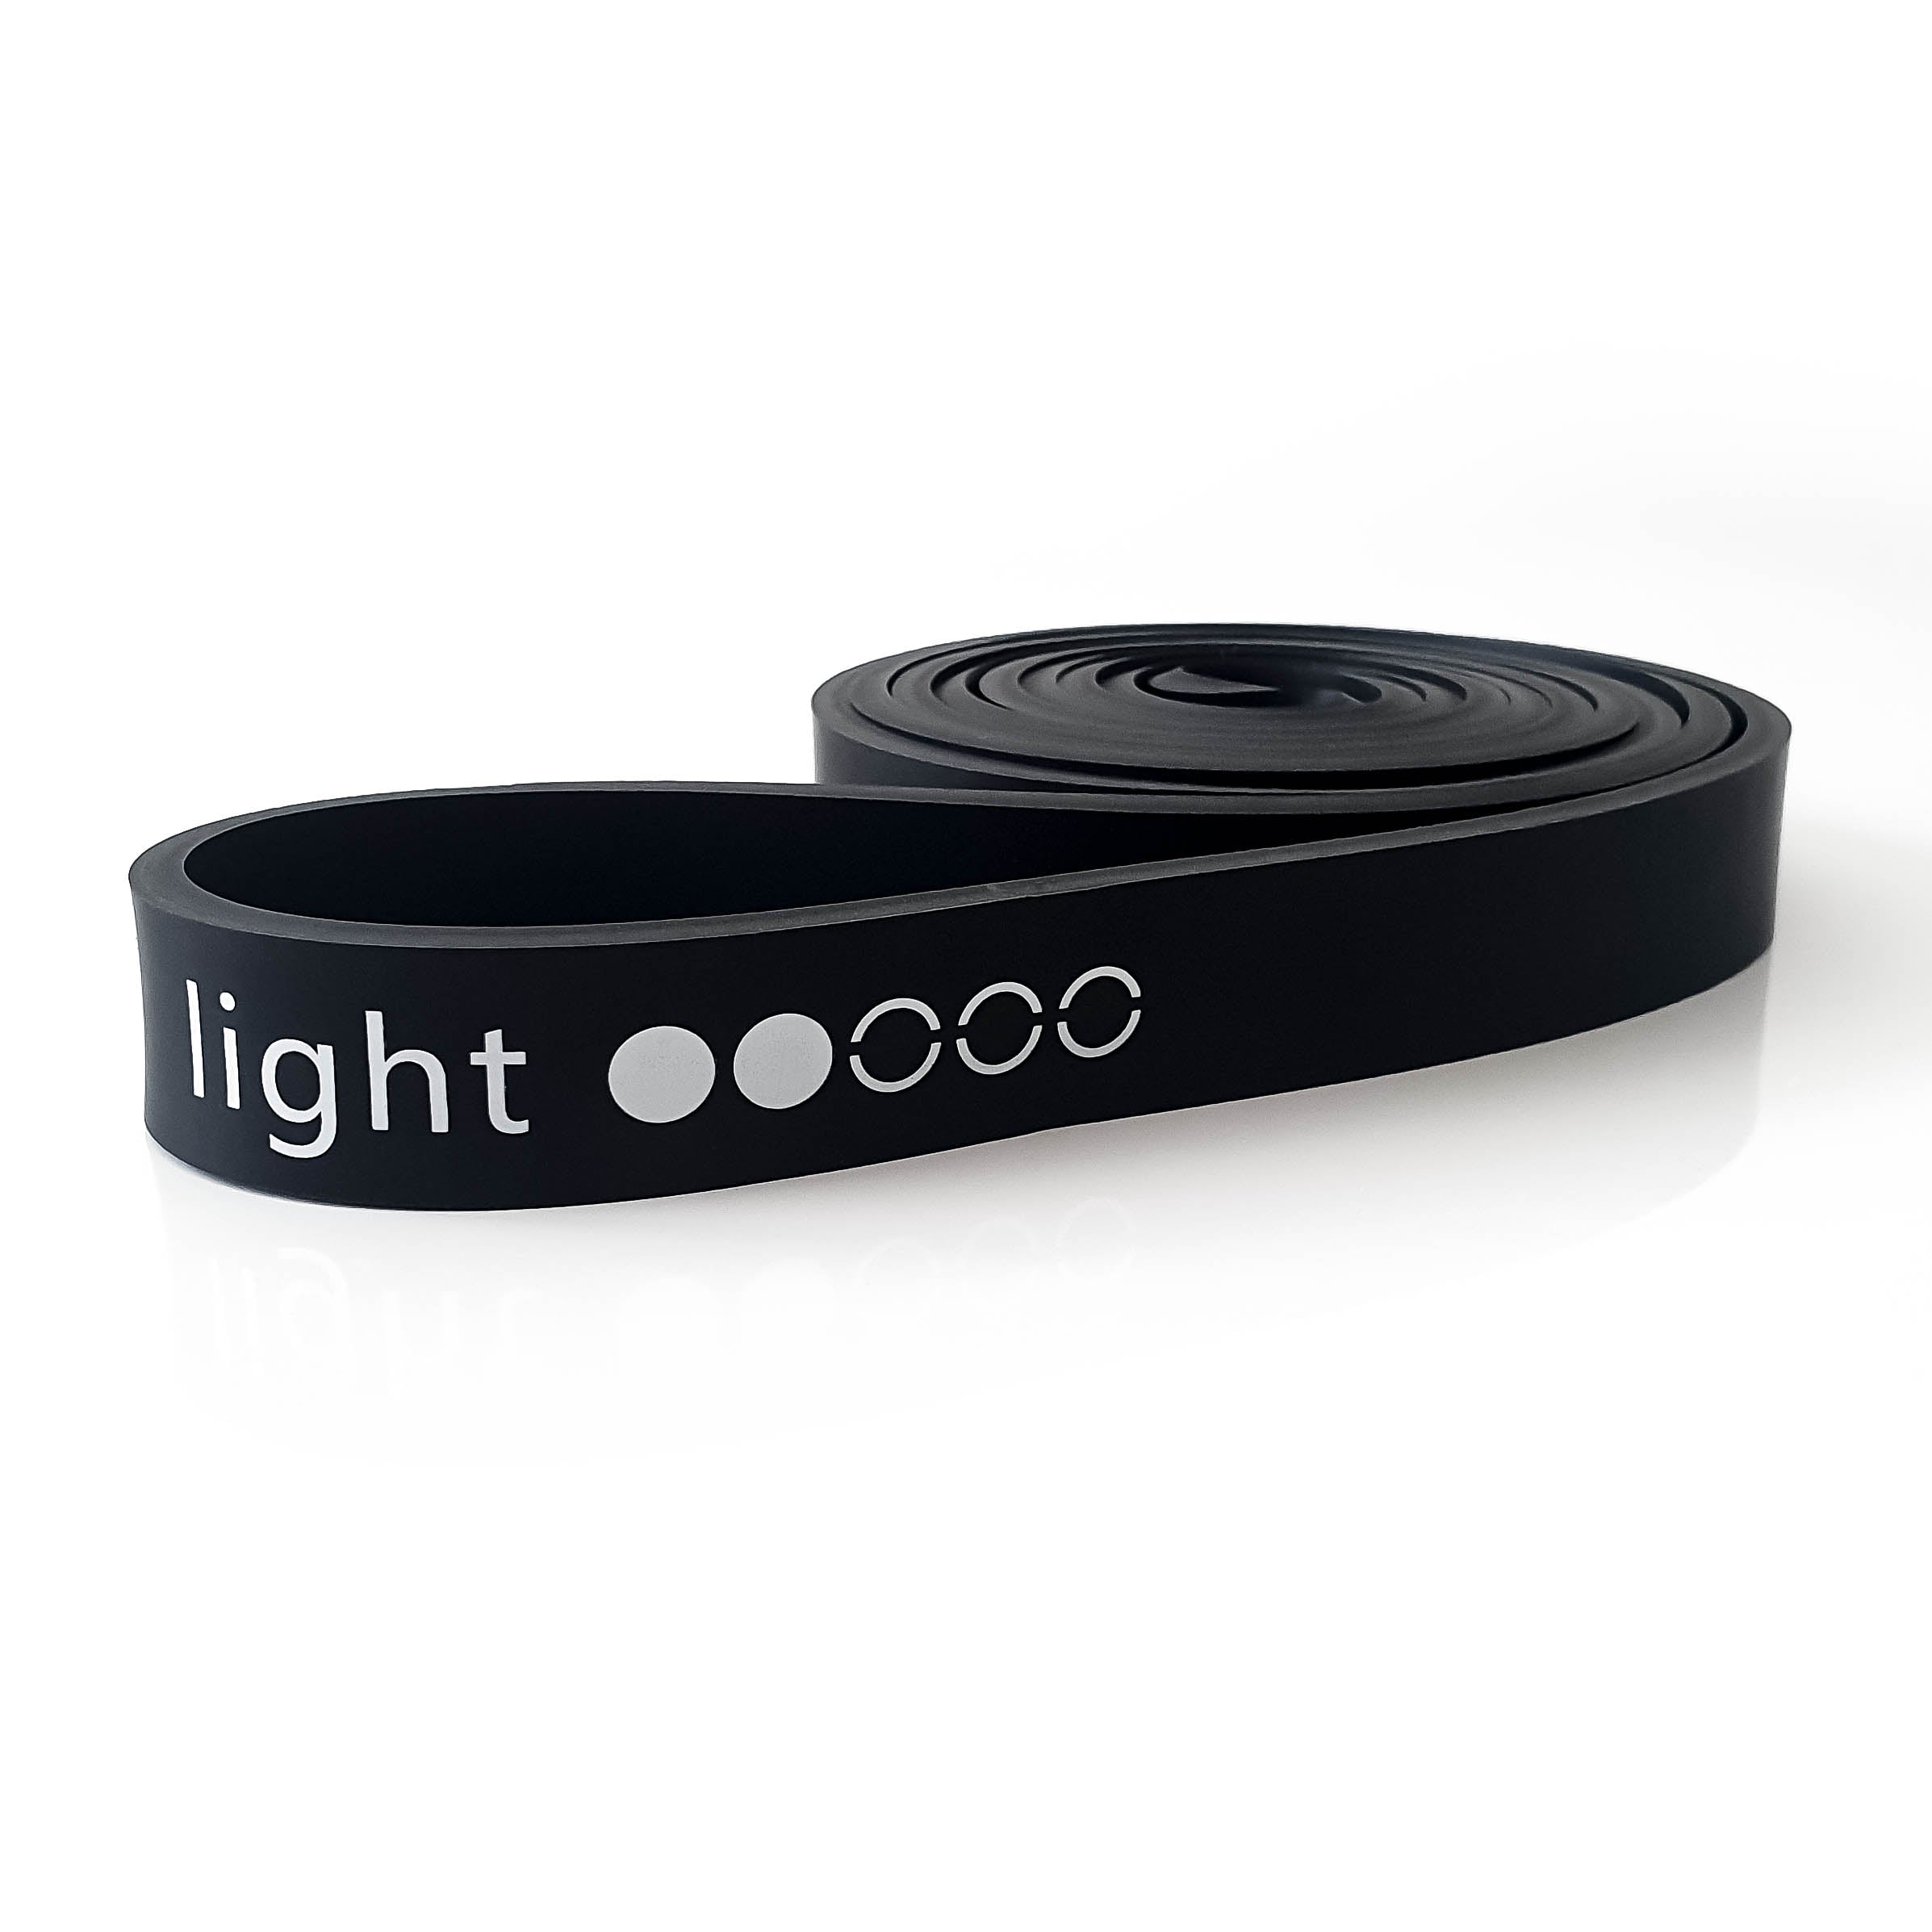 One-Loop Fitnessband Light Vorderansicht